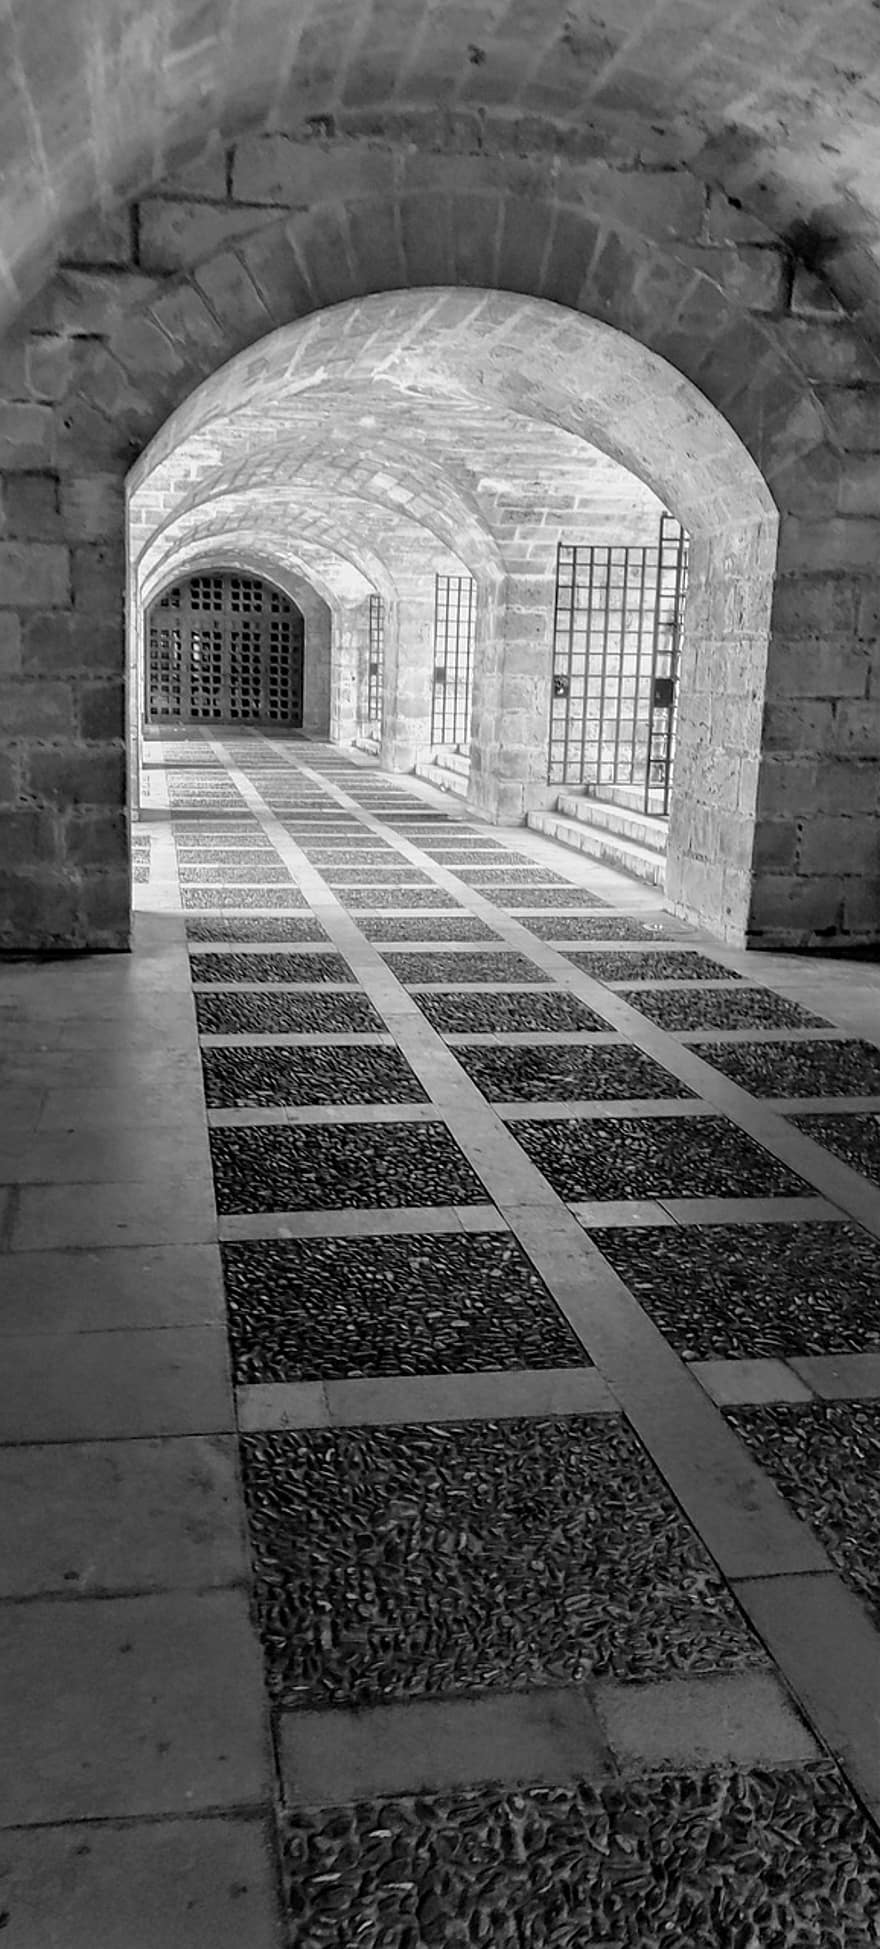 holvikäytävä, rautakaiteet, neliöt, musta valkoinen, Mallorca